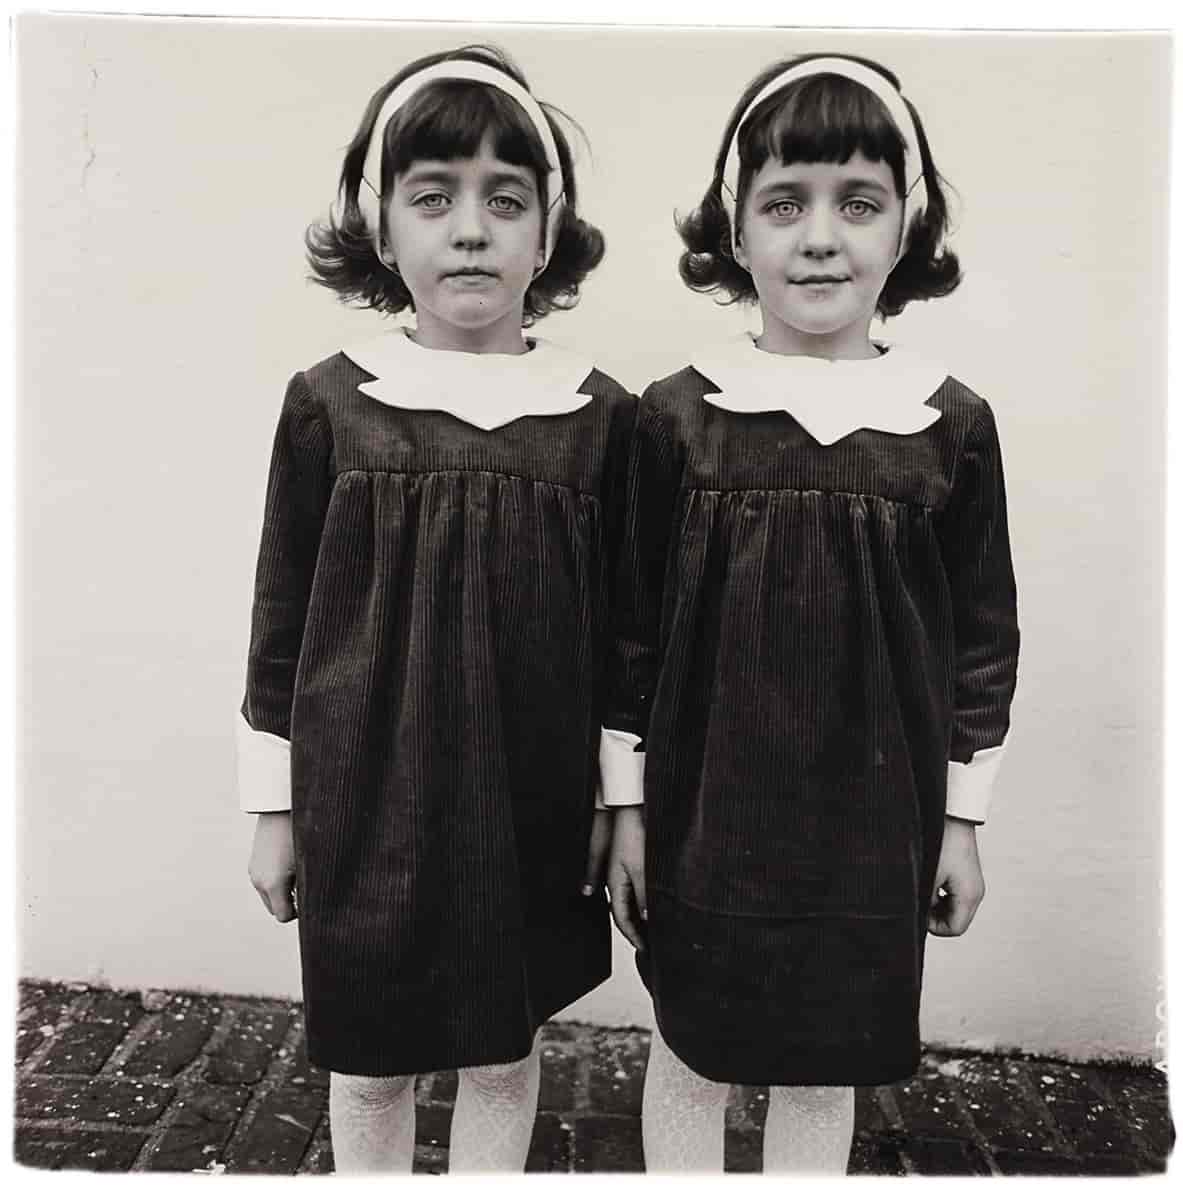 Identical twins, Roselle, N.J. / Diane Arbus.